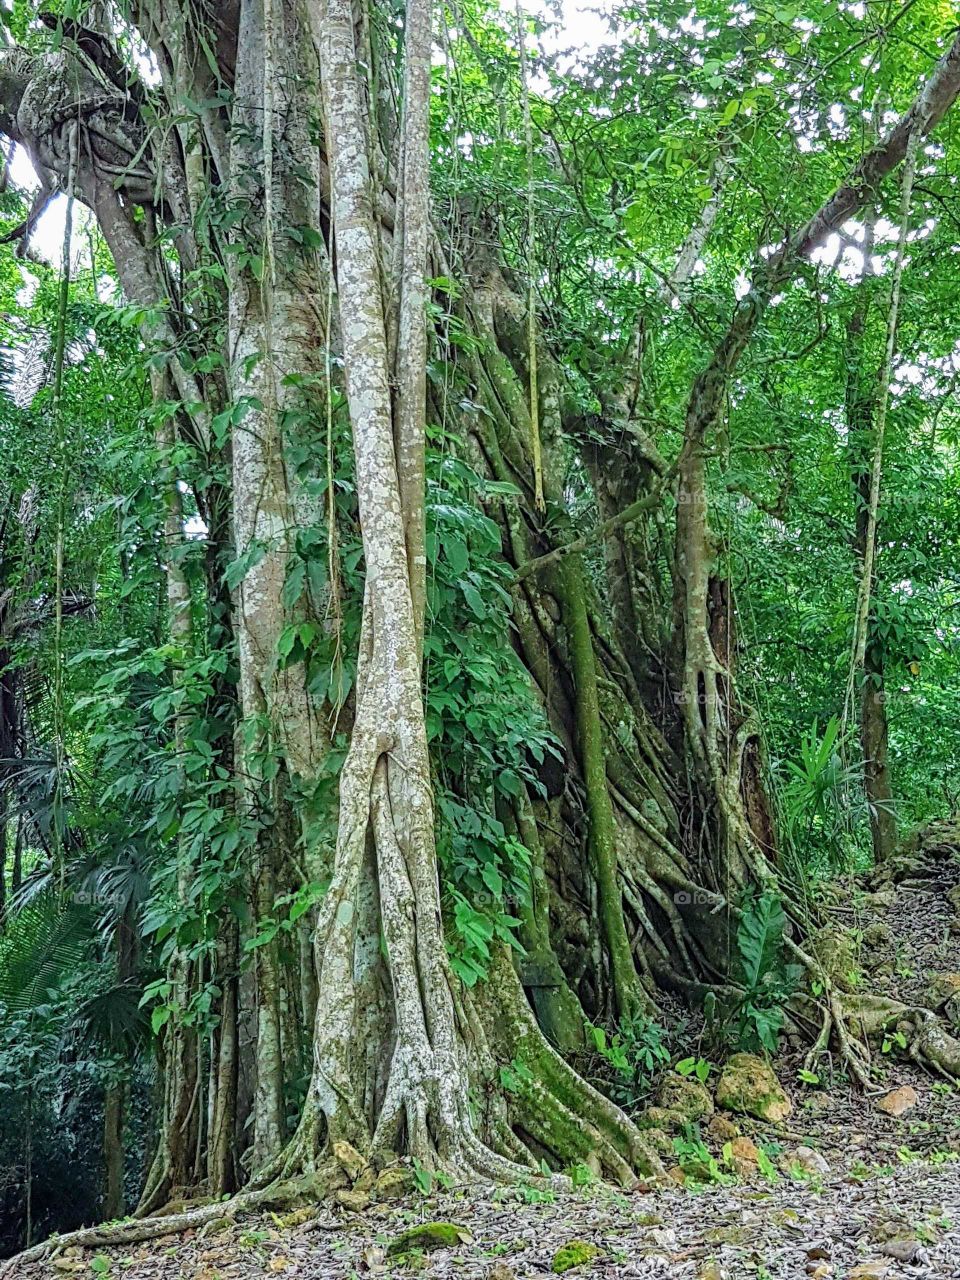 Rainforest roots